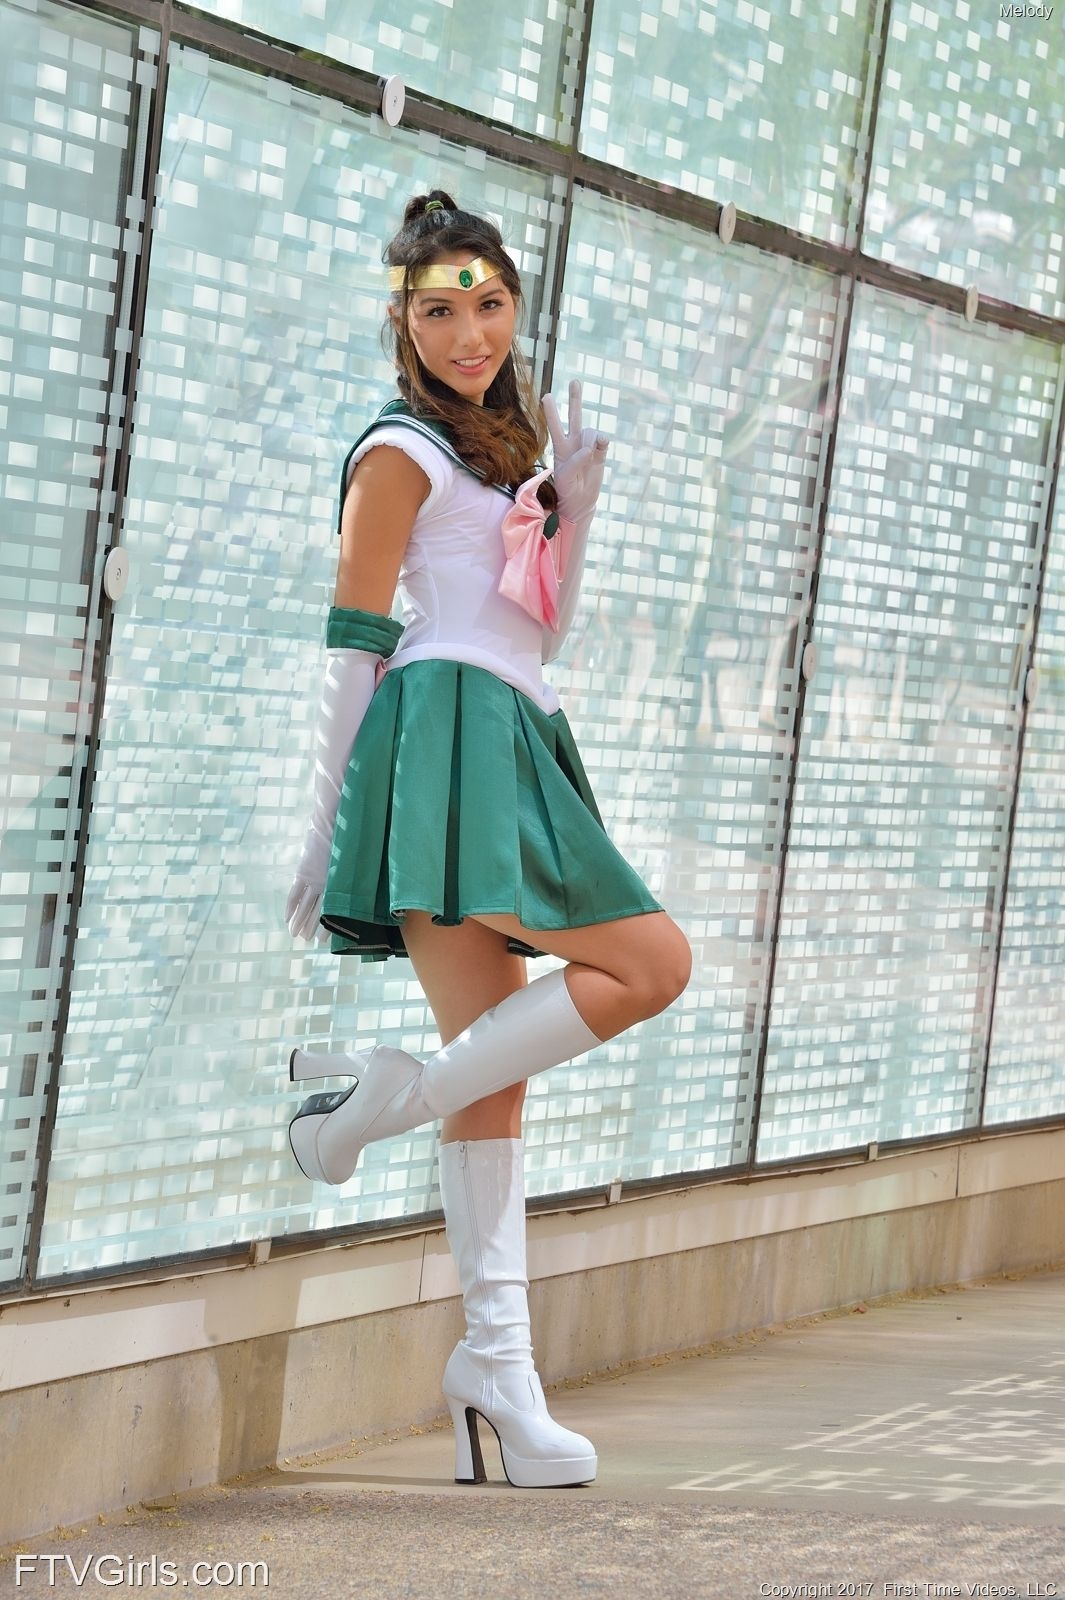 Melody Wylde as Sailor Jupiter 15